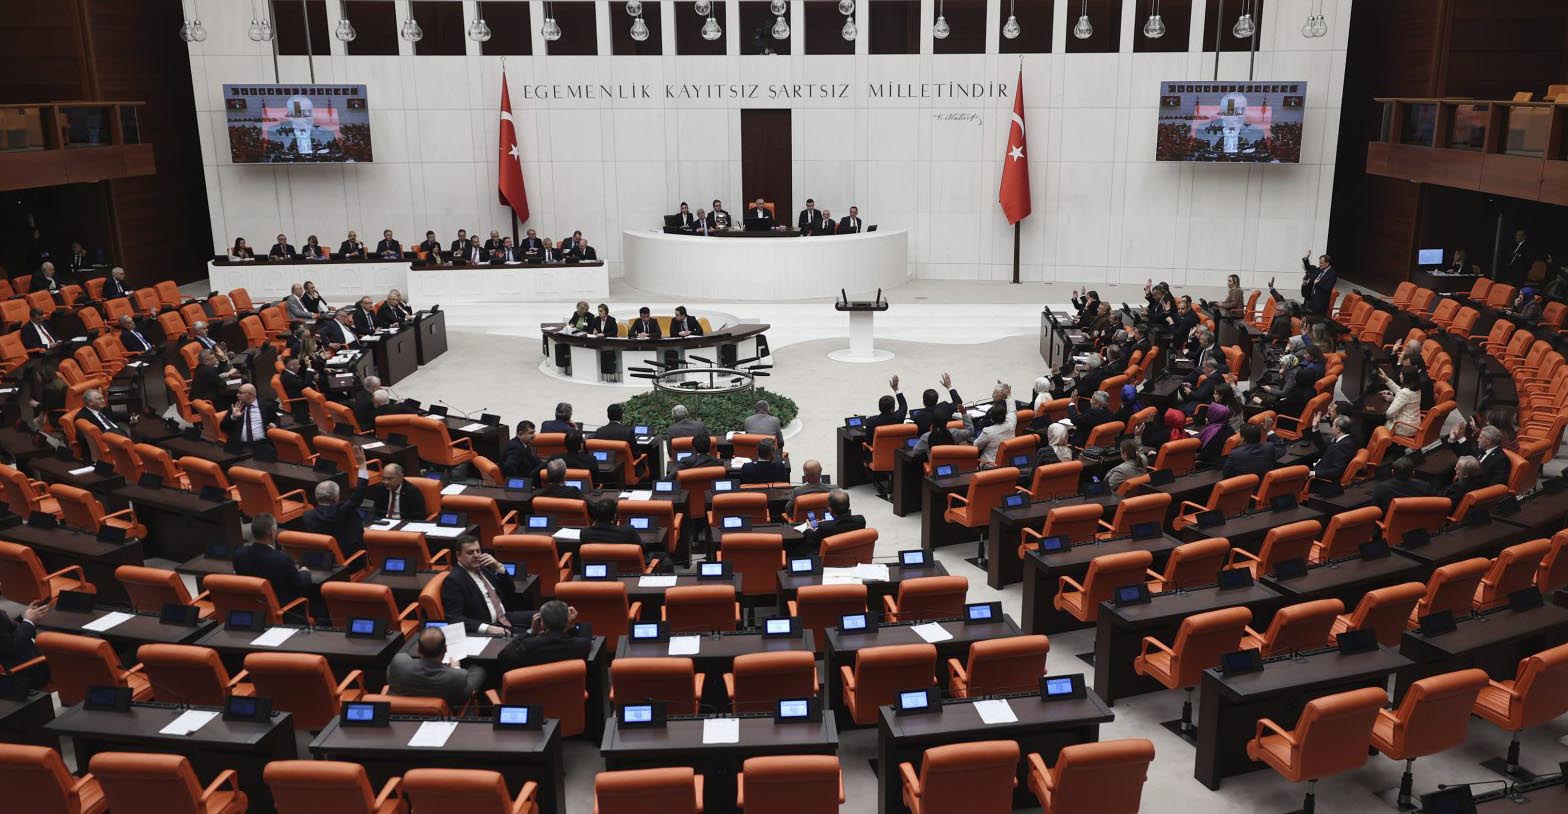 Βουλευτής στην Τουρκία έπαθε καρδιακή προσβολή και κατέρρευσε ενώ μιλούσε στην Εθνοσυνέλευση -Δείτε βίντεο